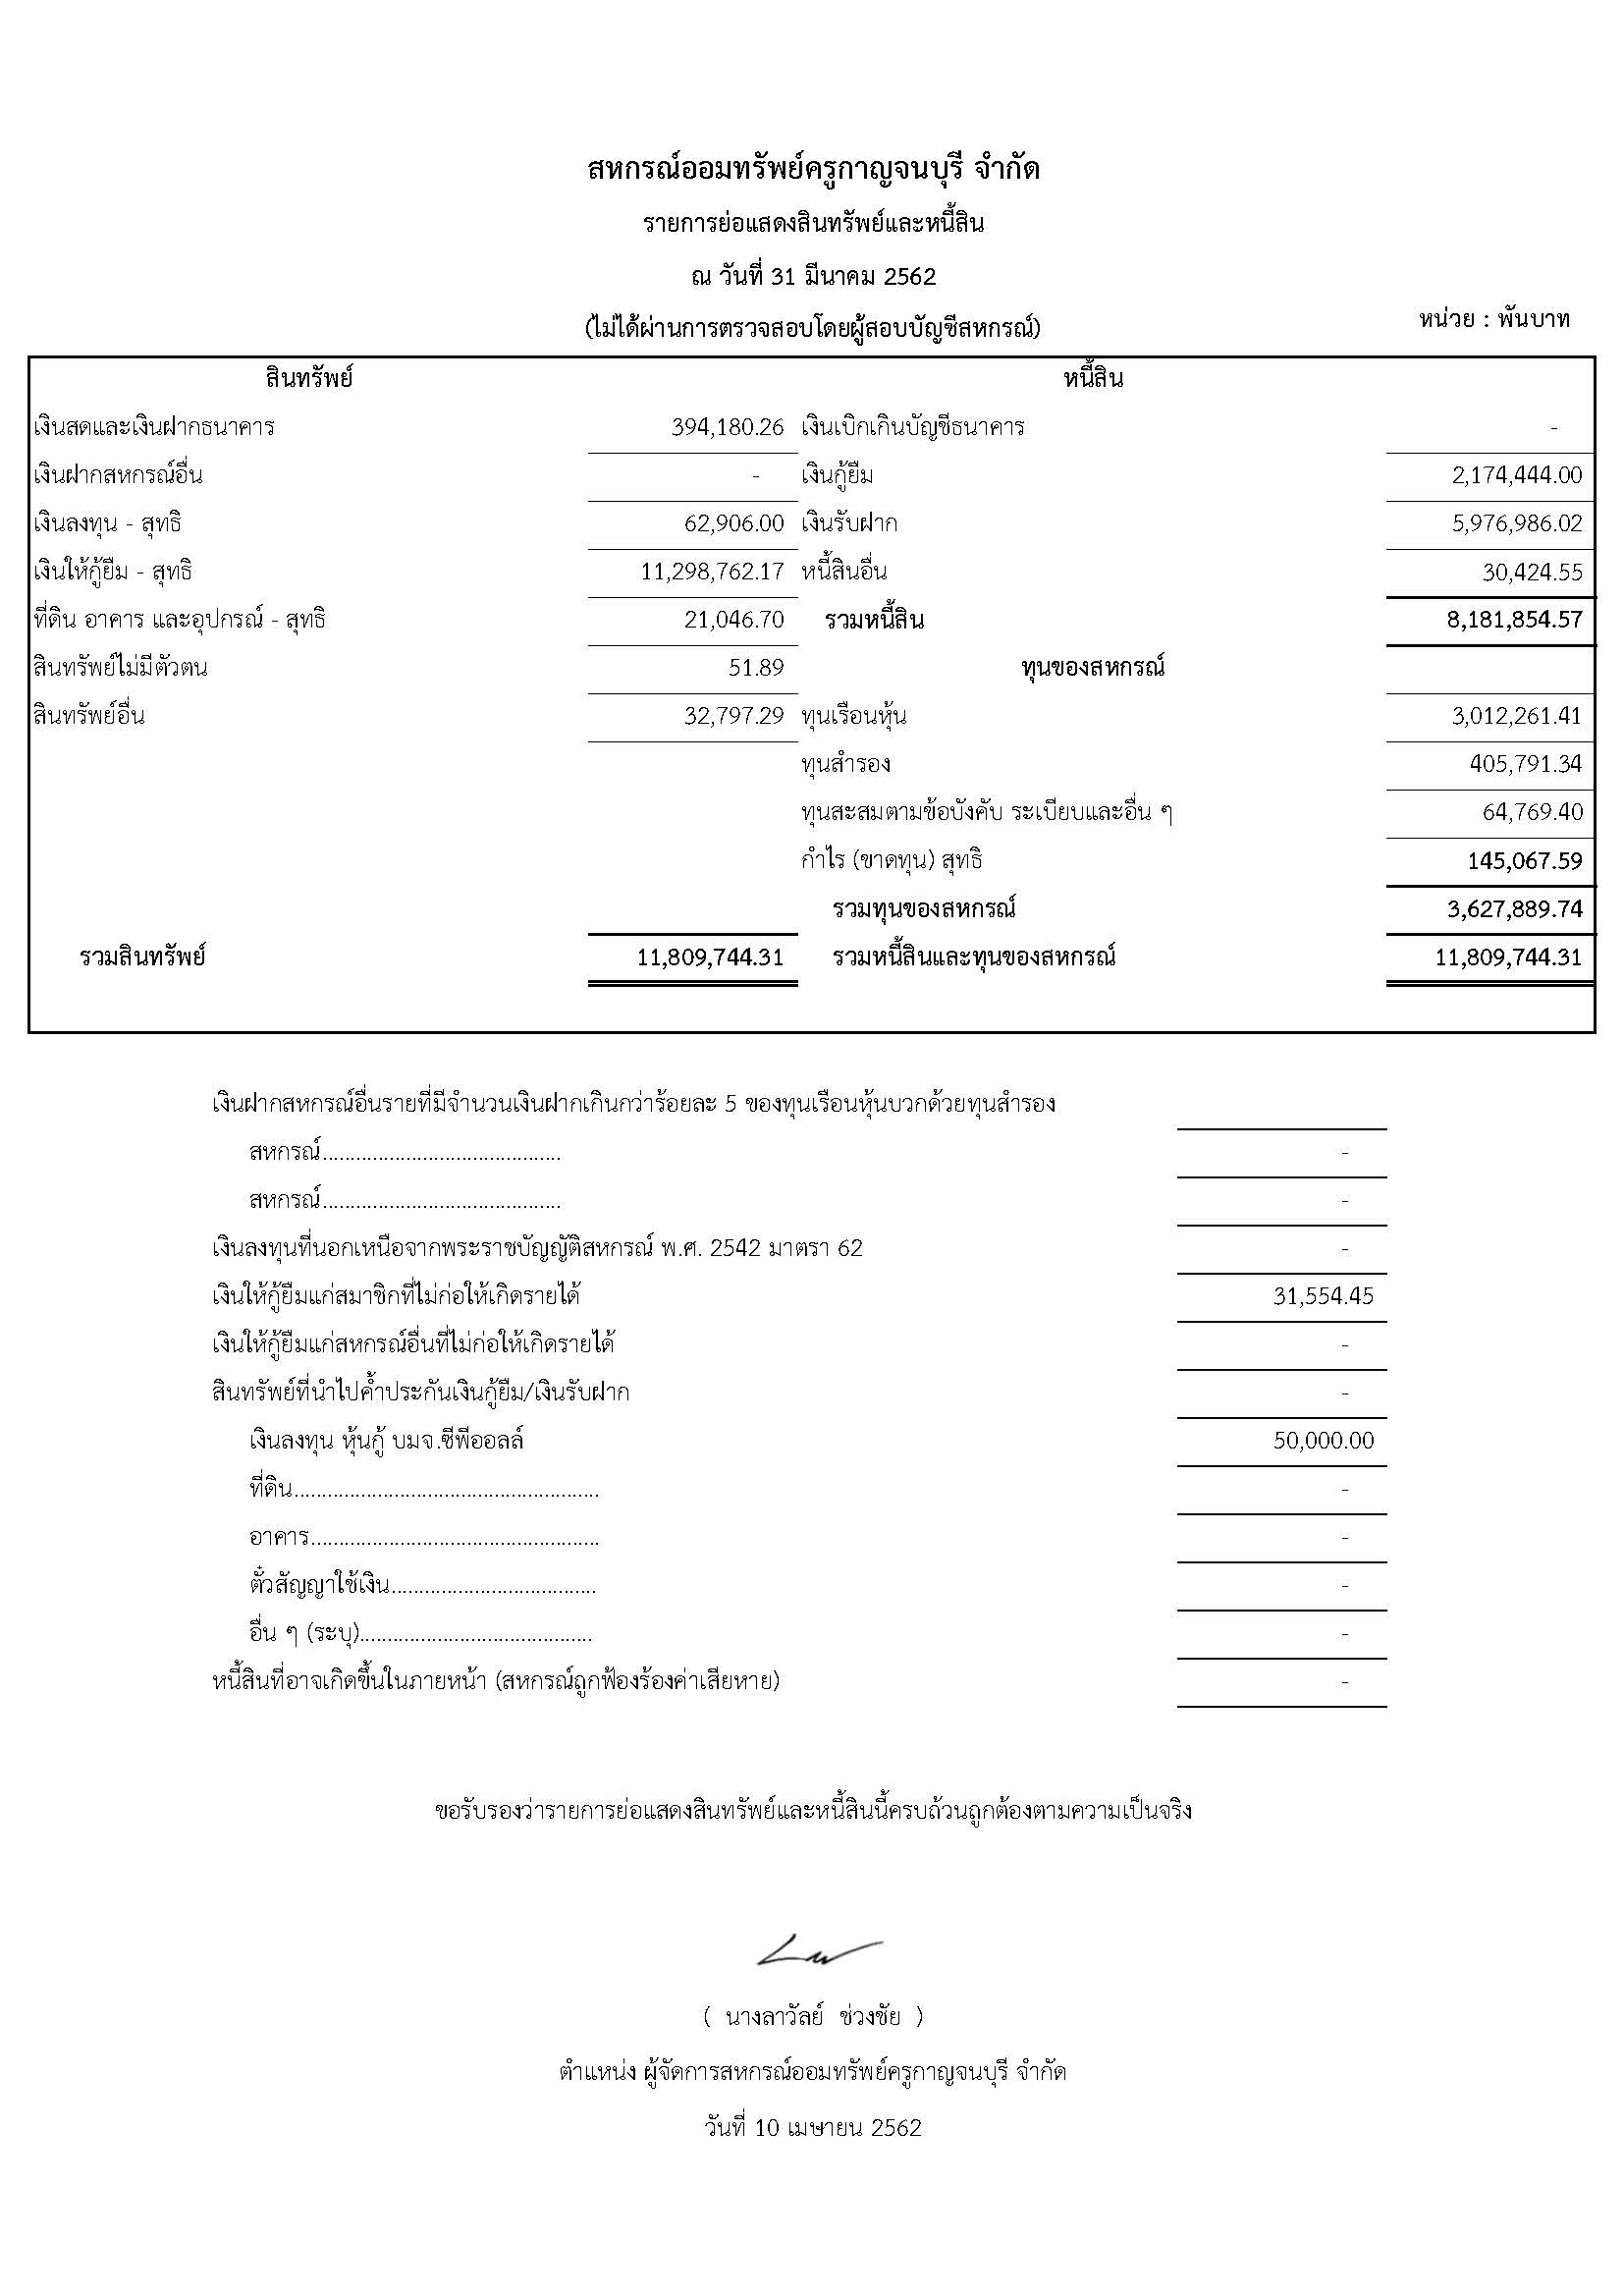 รายการย่อแสดงสินทรัพย์และหนี้สิน ณ วันที่ 31 มีนาคม 2562 (ไม่ได้ผ่านการตรวจสอบโดยผู้สอบบัญชีสหกรณ์)